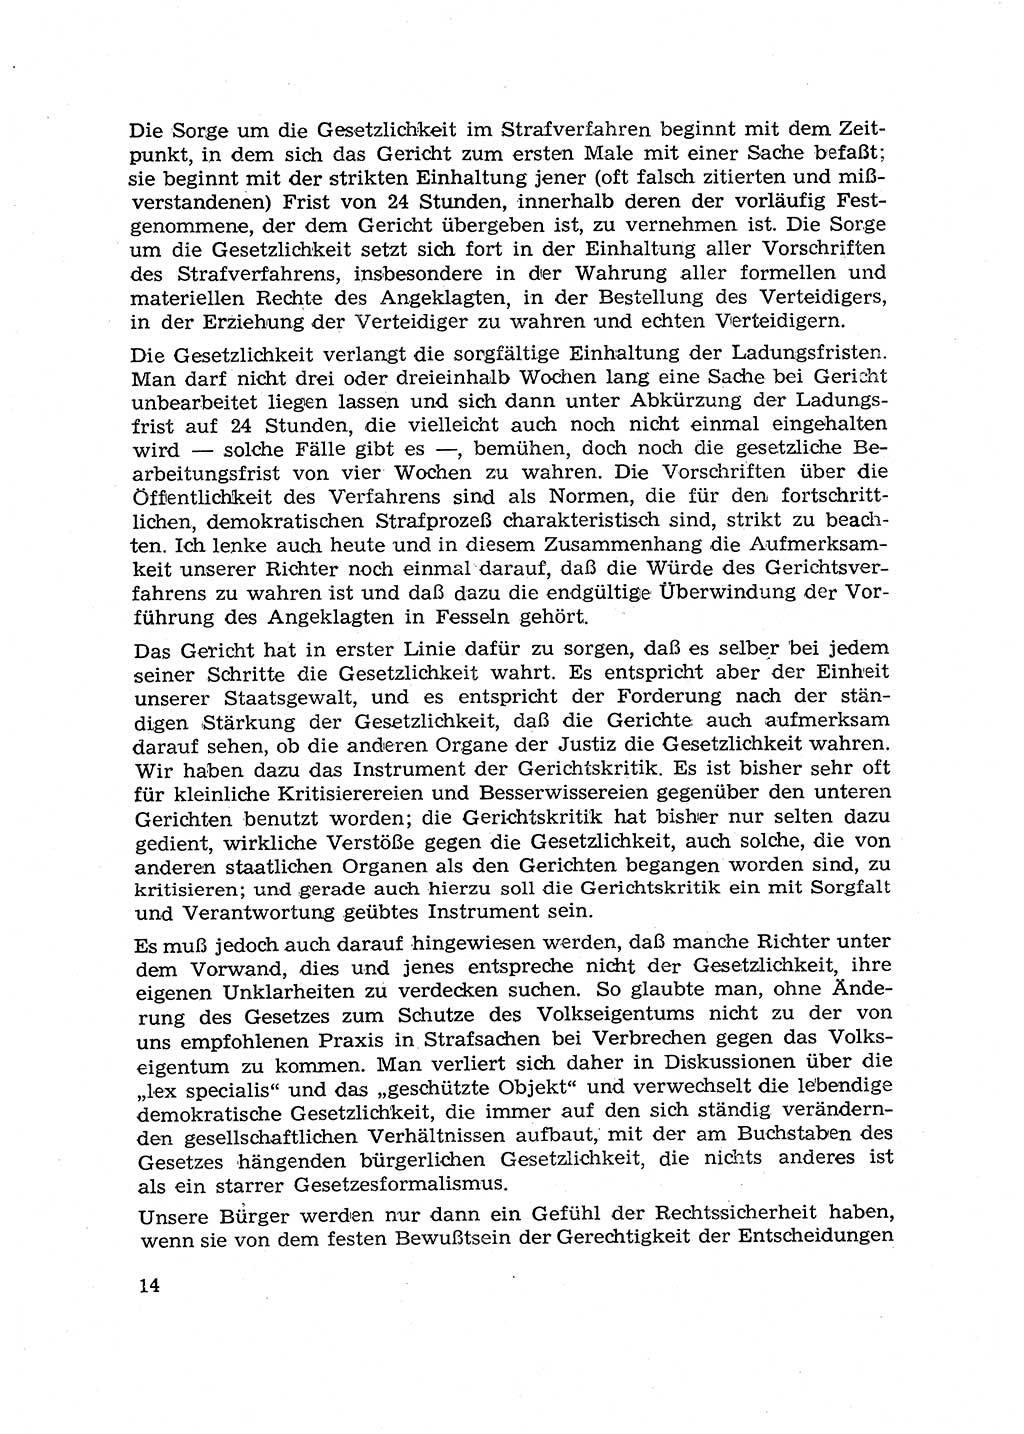 Hauptaufgaben der Justiz [Deutsche Demokratische Republik (DDR)] bei der Durchführung des neuen Kurses 1953, Seite 14 (Hpt.-Aufg. J. DDR 1953, S. 14)